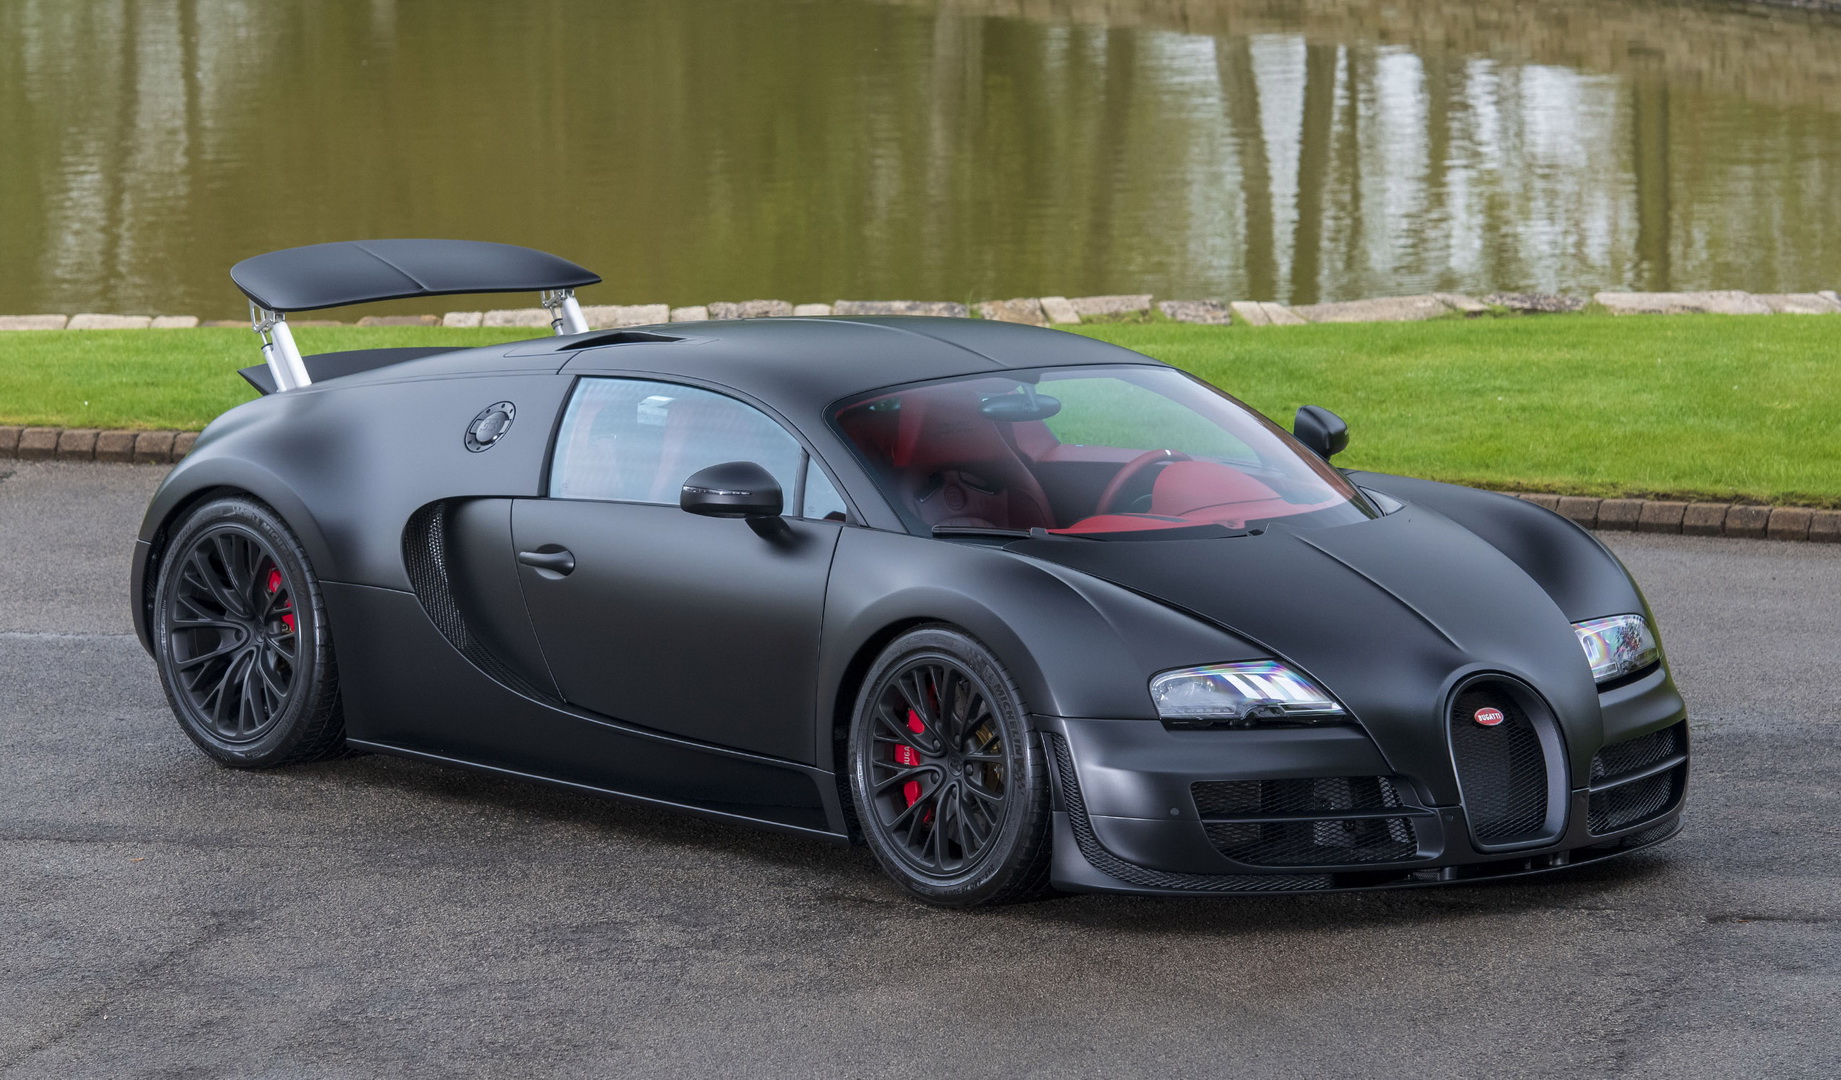 https://s1.cdn.autoevolution.com/images/news/very-last-bugatti-veyron-super-sport-ever-made-is-a-1184-hp-matte-black-stunner-162519_1.jpg